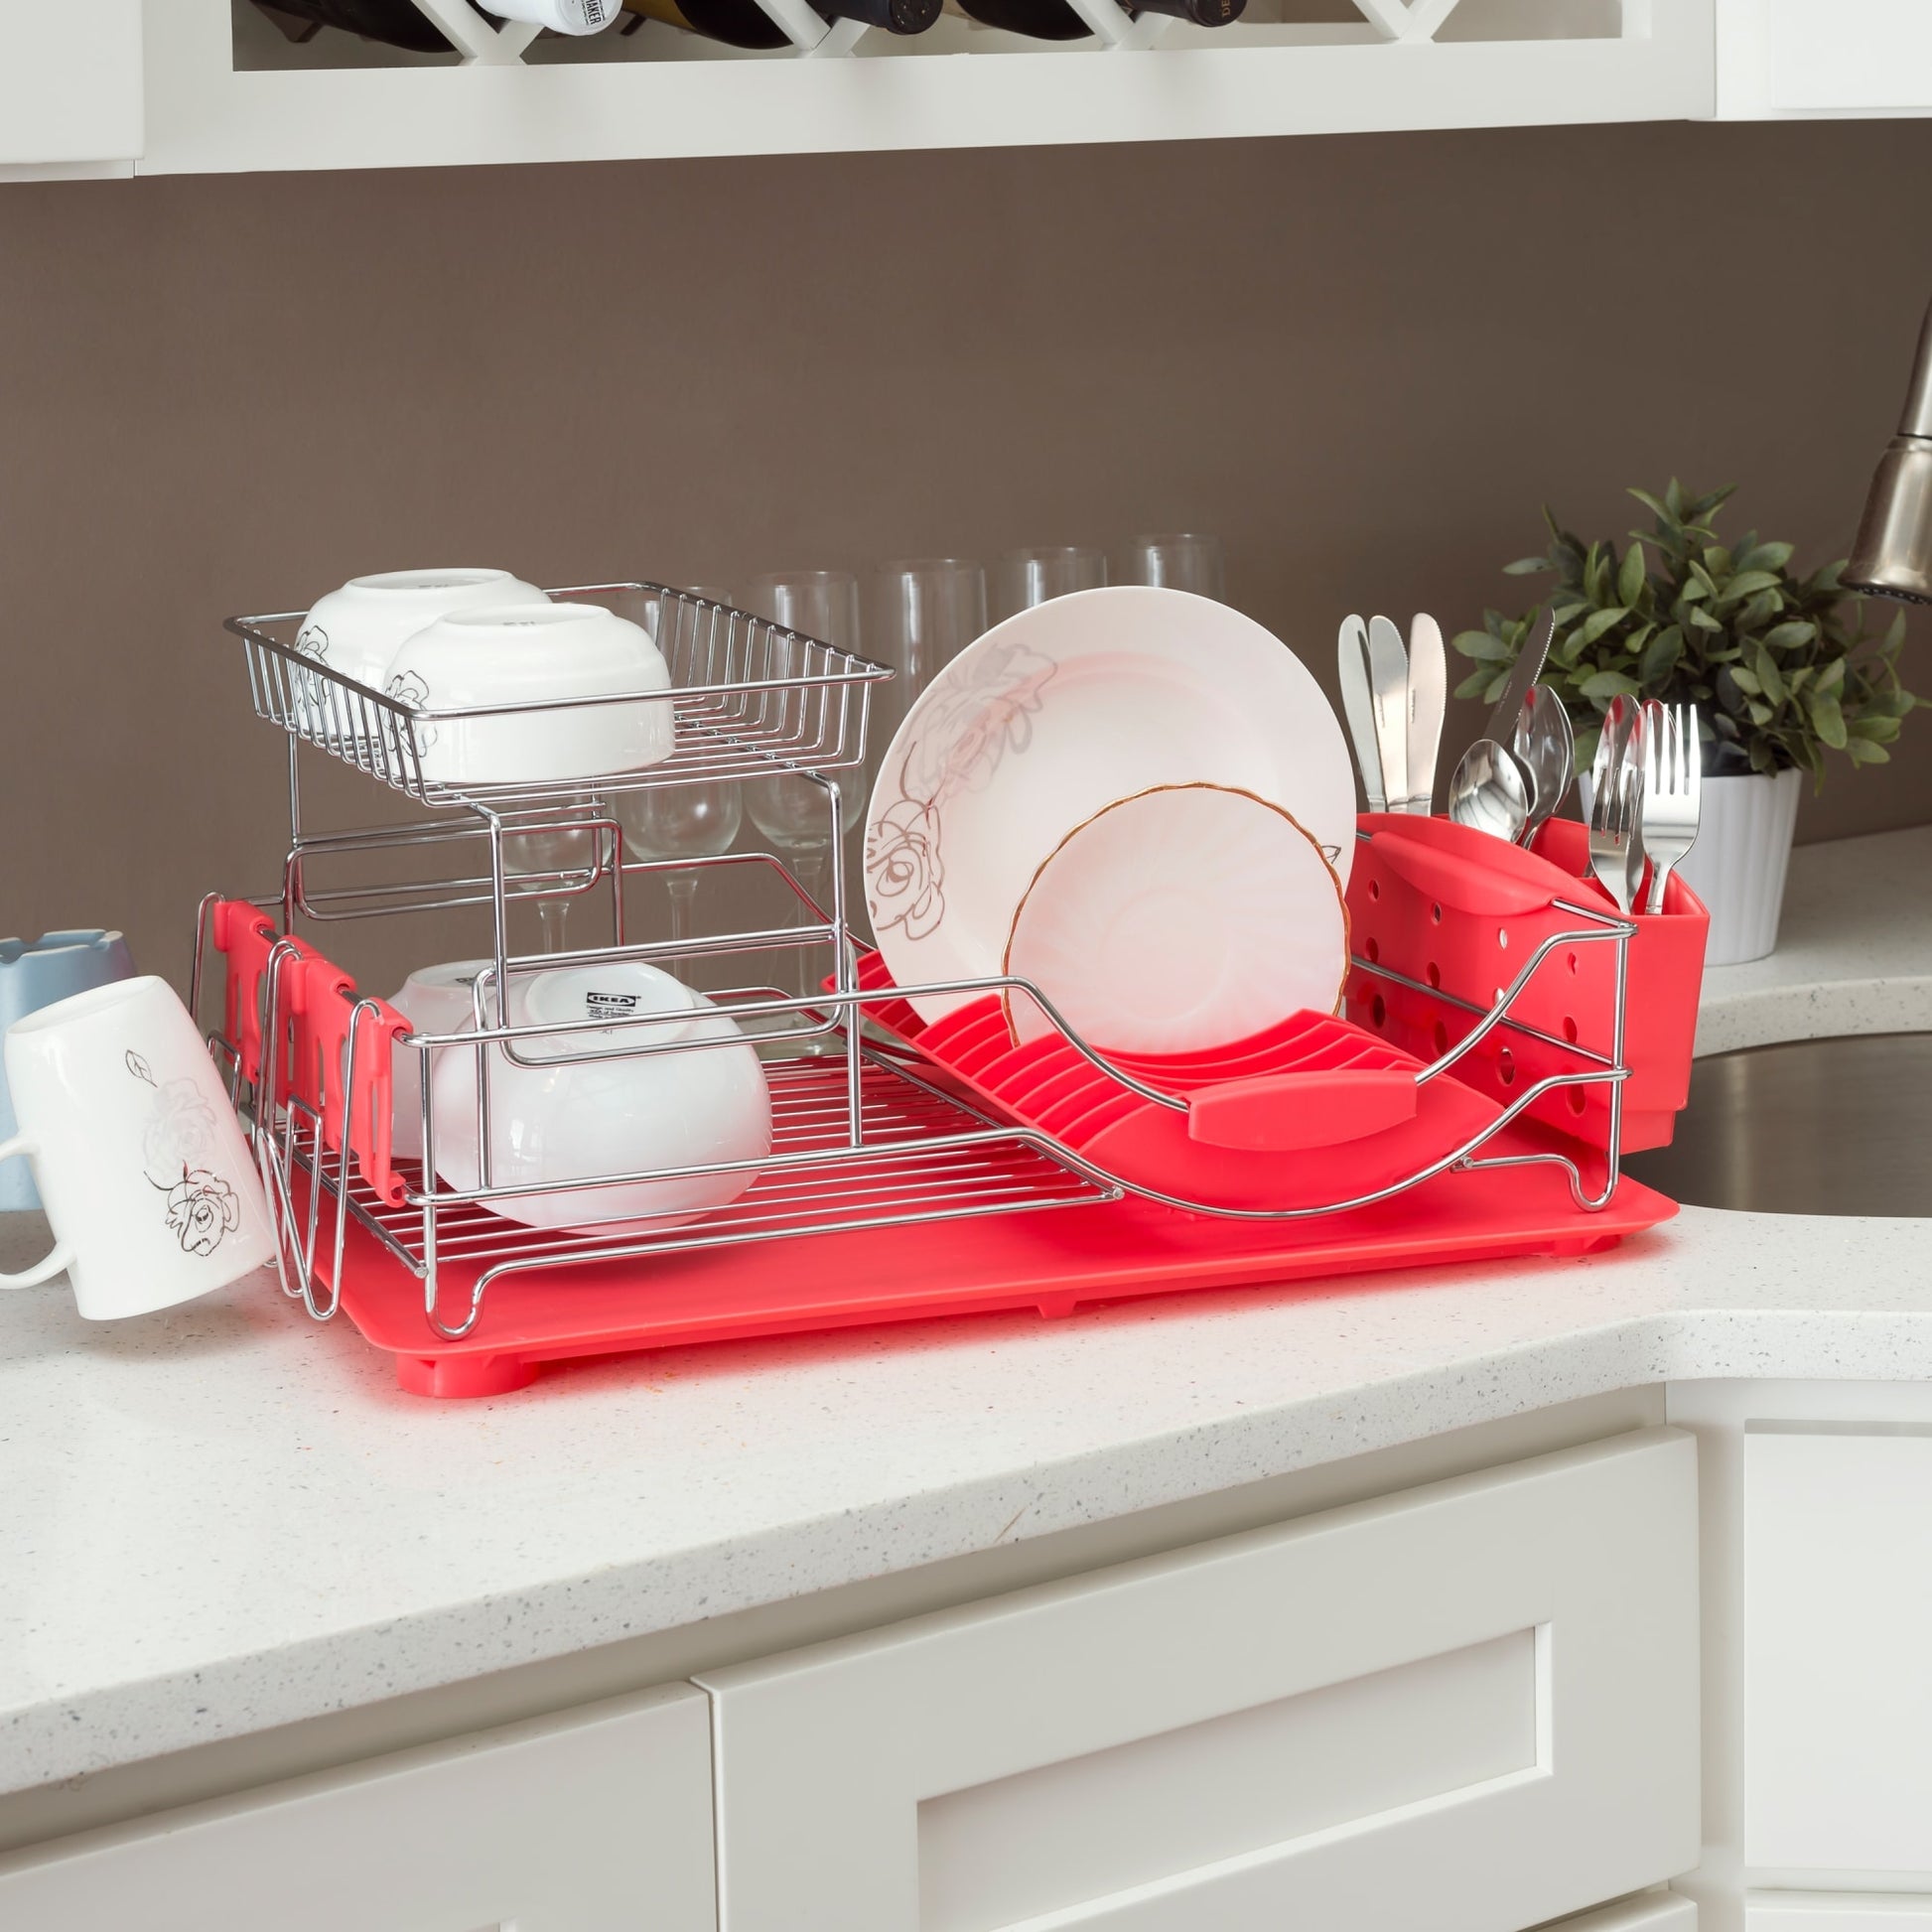 Home Basics 2 Tier Plastic Dish Drainer, White, KITCHEN ORGANIZATION